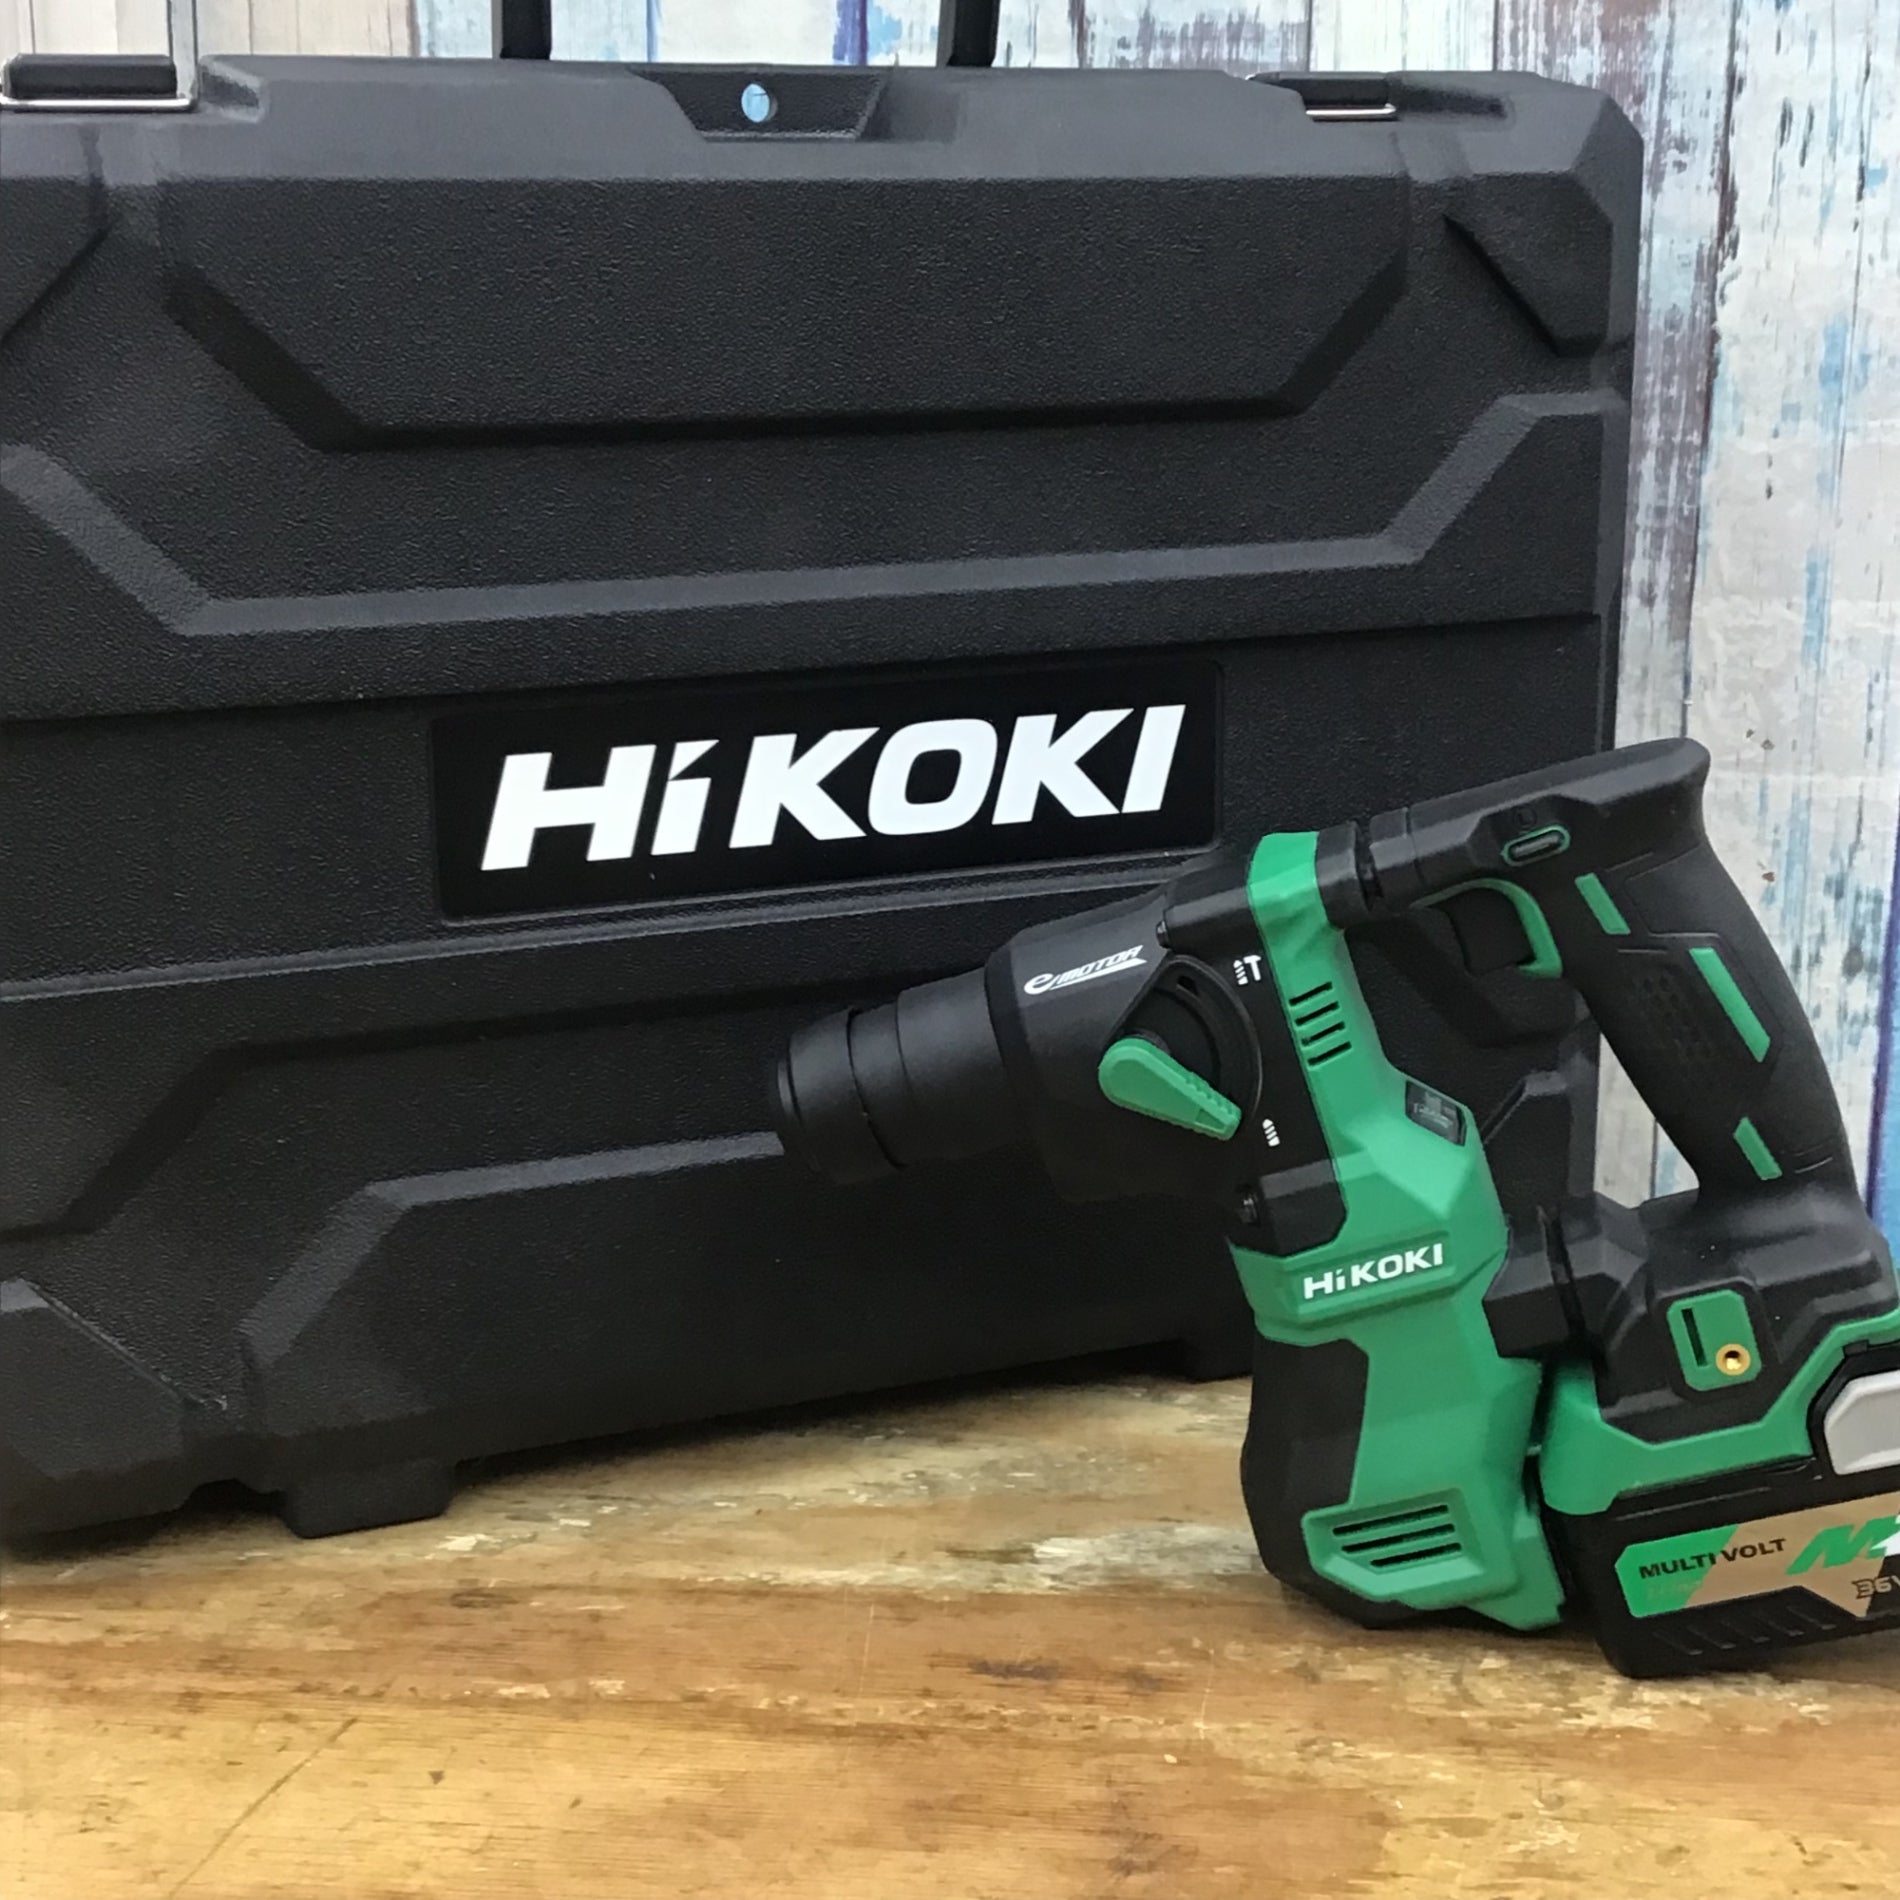 HiKOKI(ハイコーキ) 18V コードレス ハンマドリル DH18DPA - 事務/店舗用品